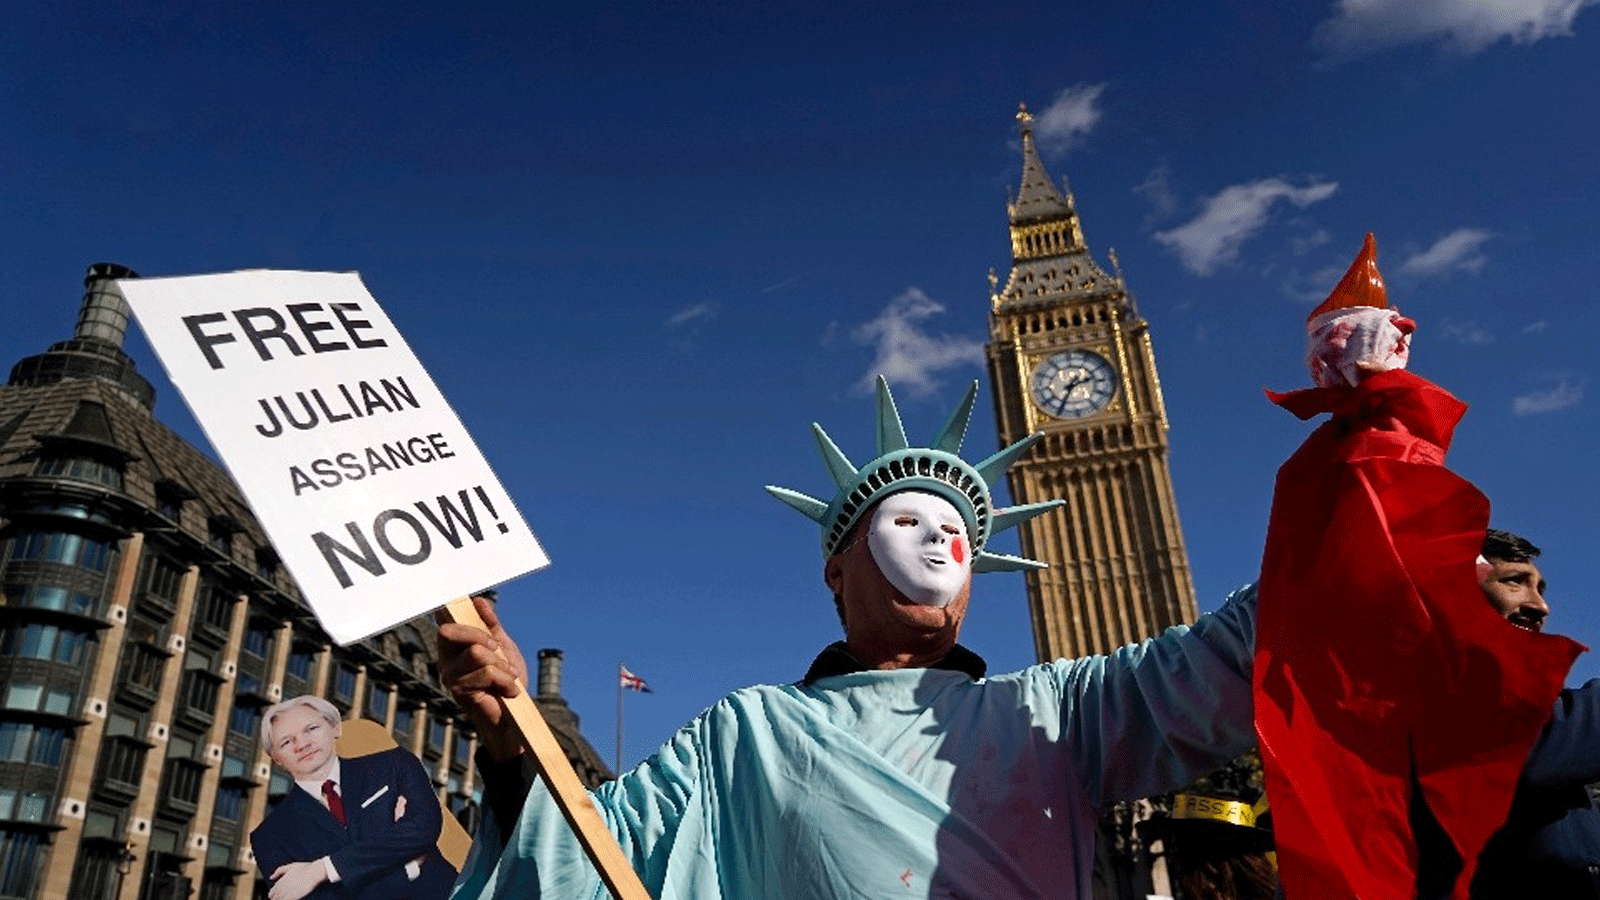 لافتات رُفعَت للمطالبة بإطلاق سراح مؤسس ويكيليكس جوليان أسانج أمام البرلمان البريطاني